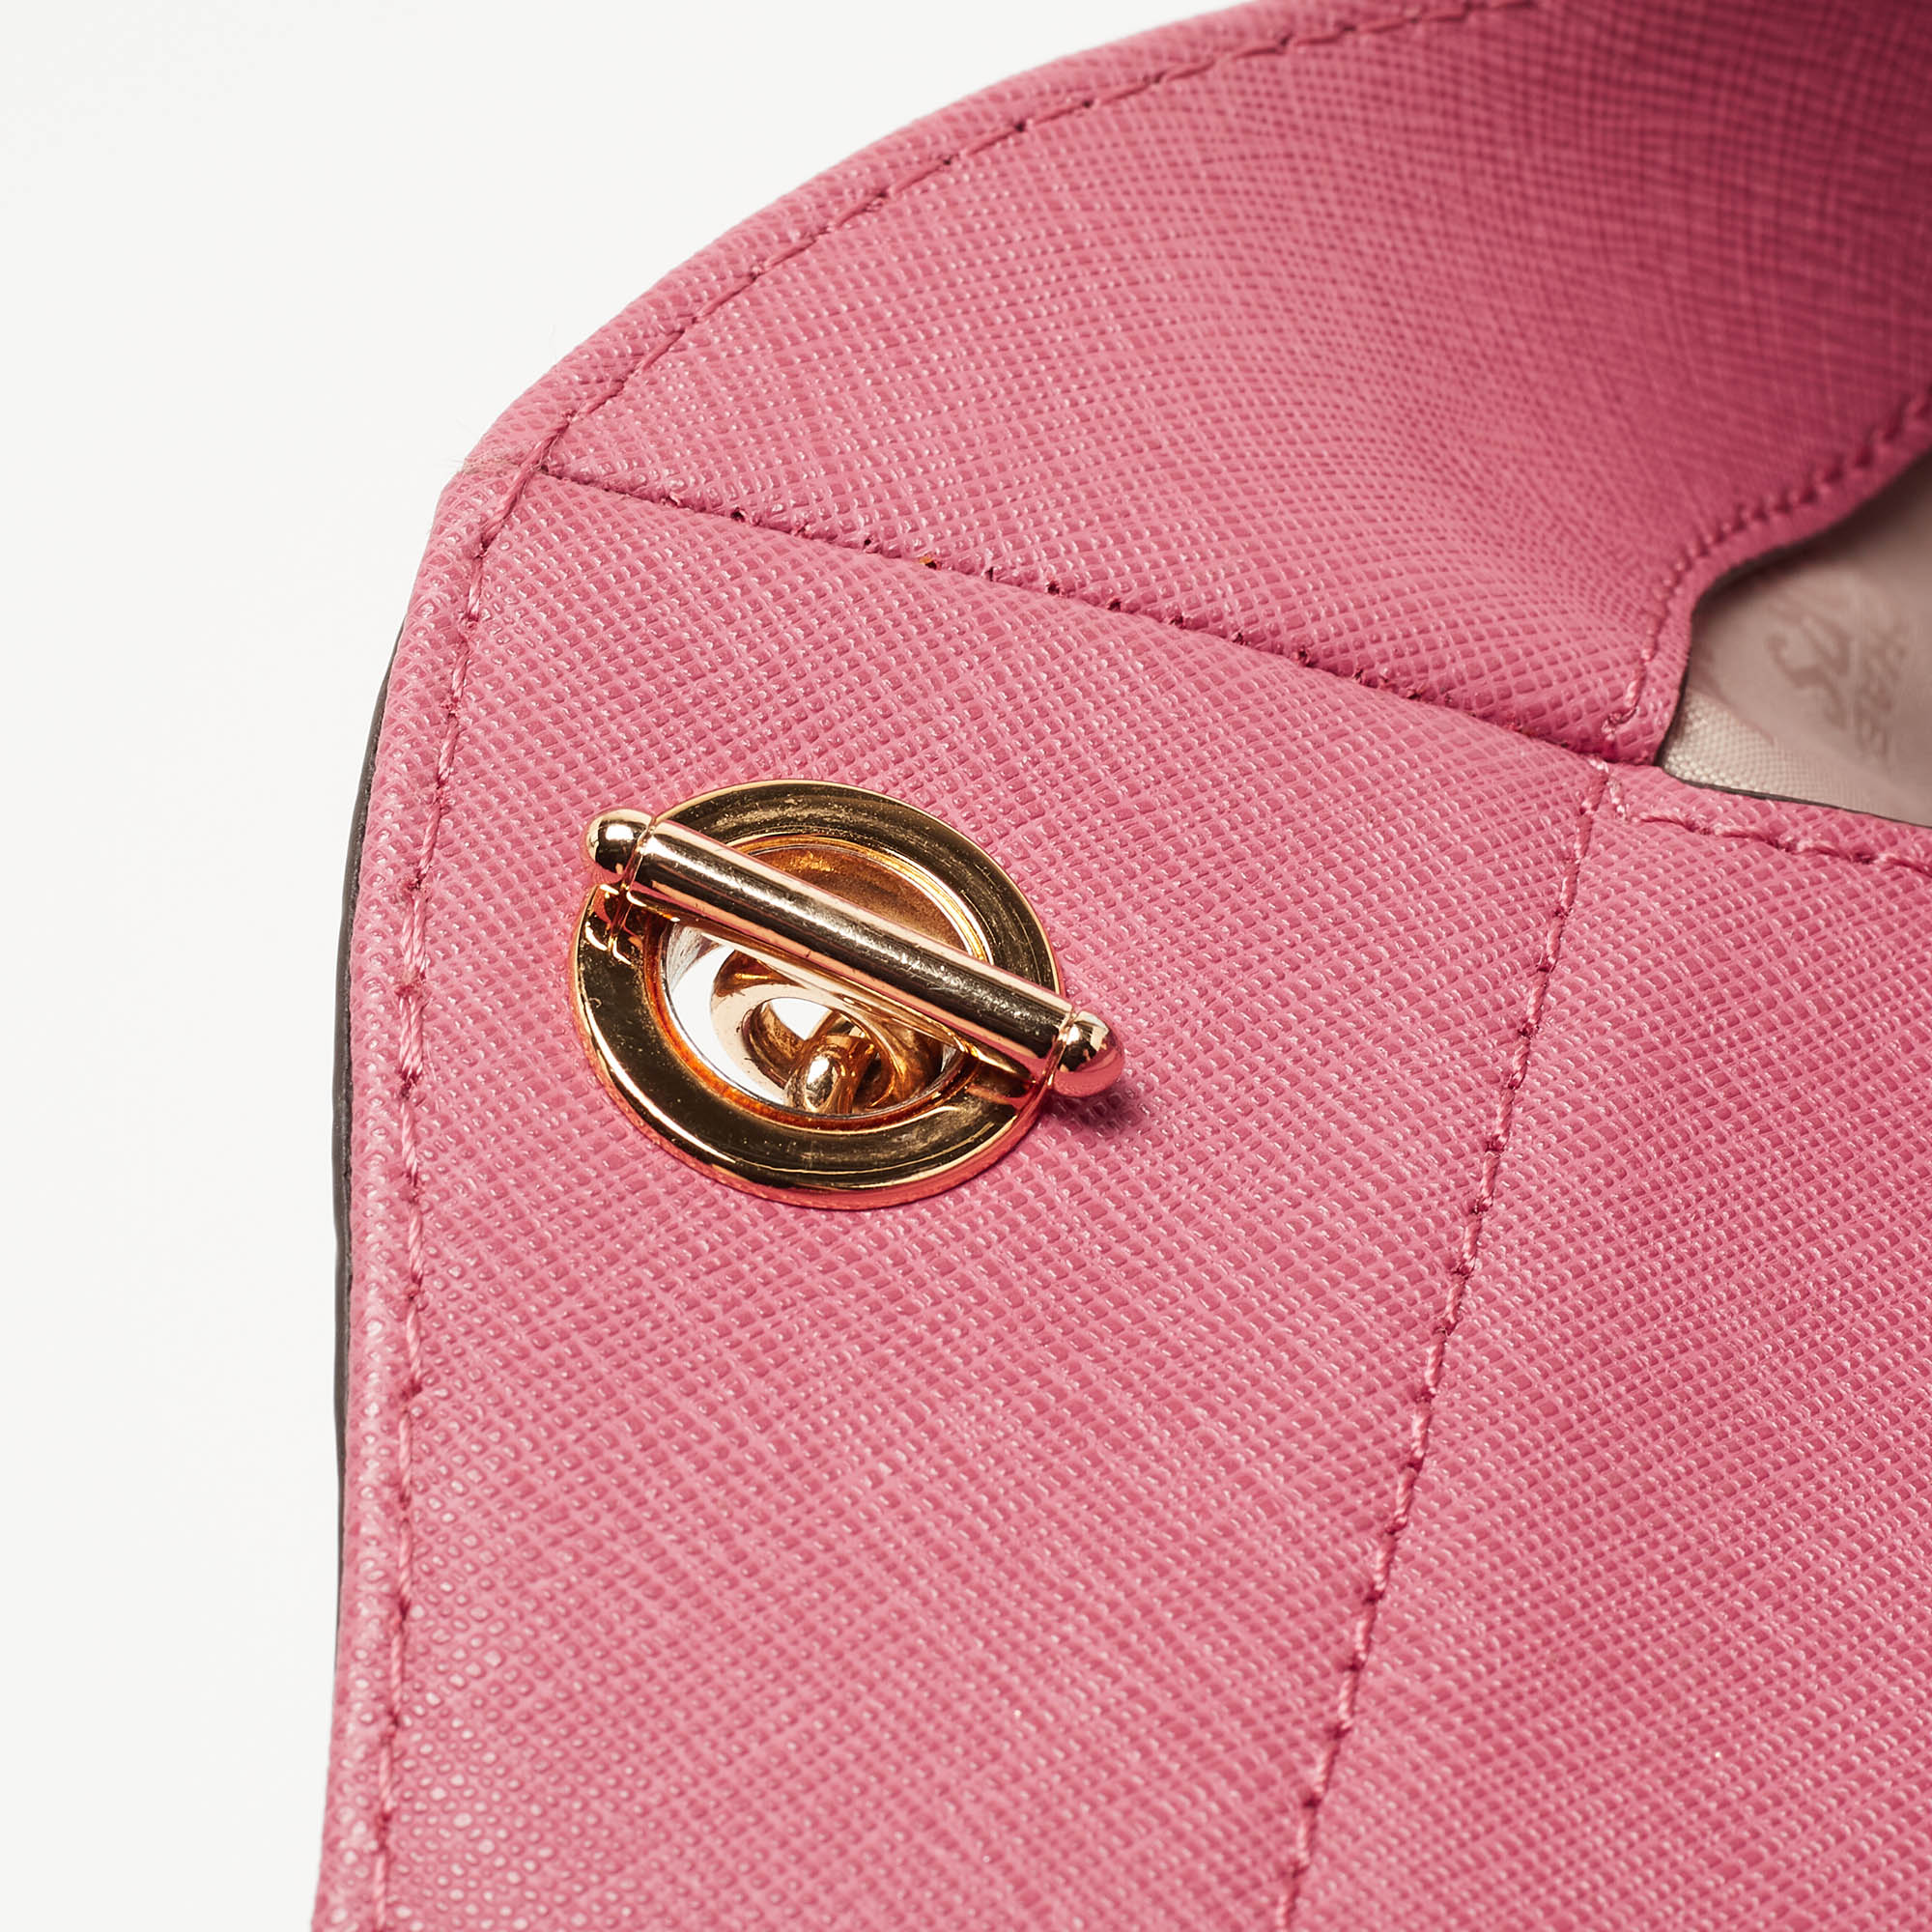 Michael Kors Pink Saffiano Leather Small Jet Set Travel Shoulder Bag